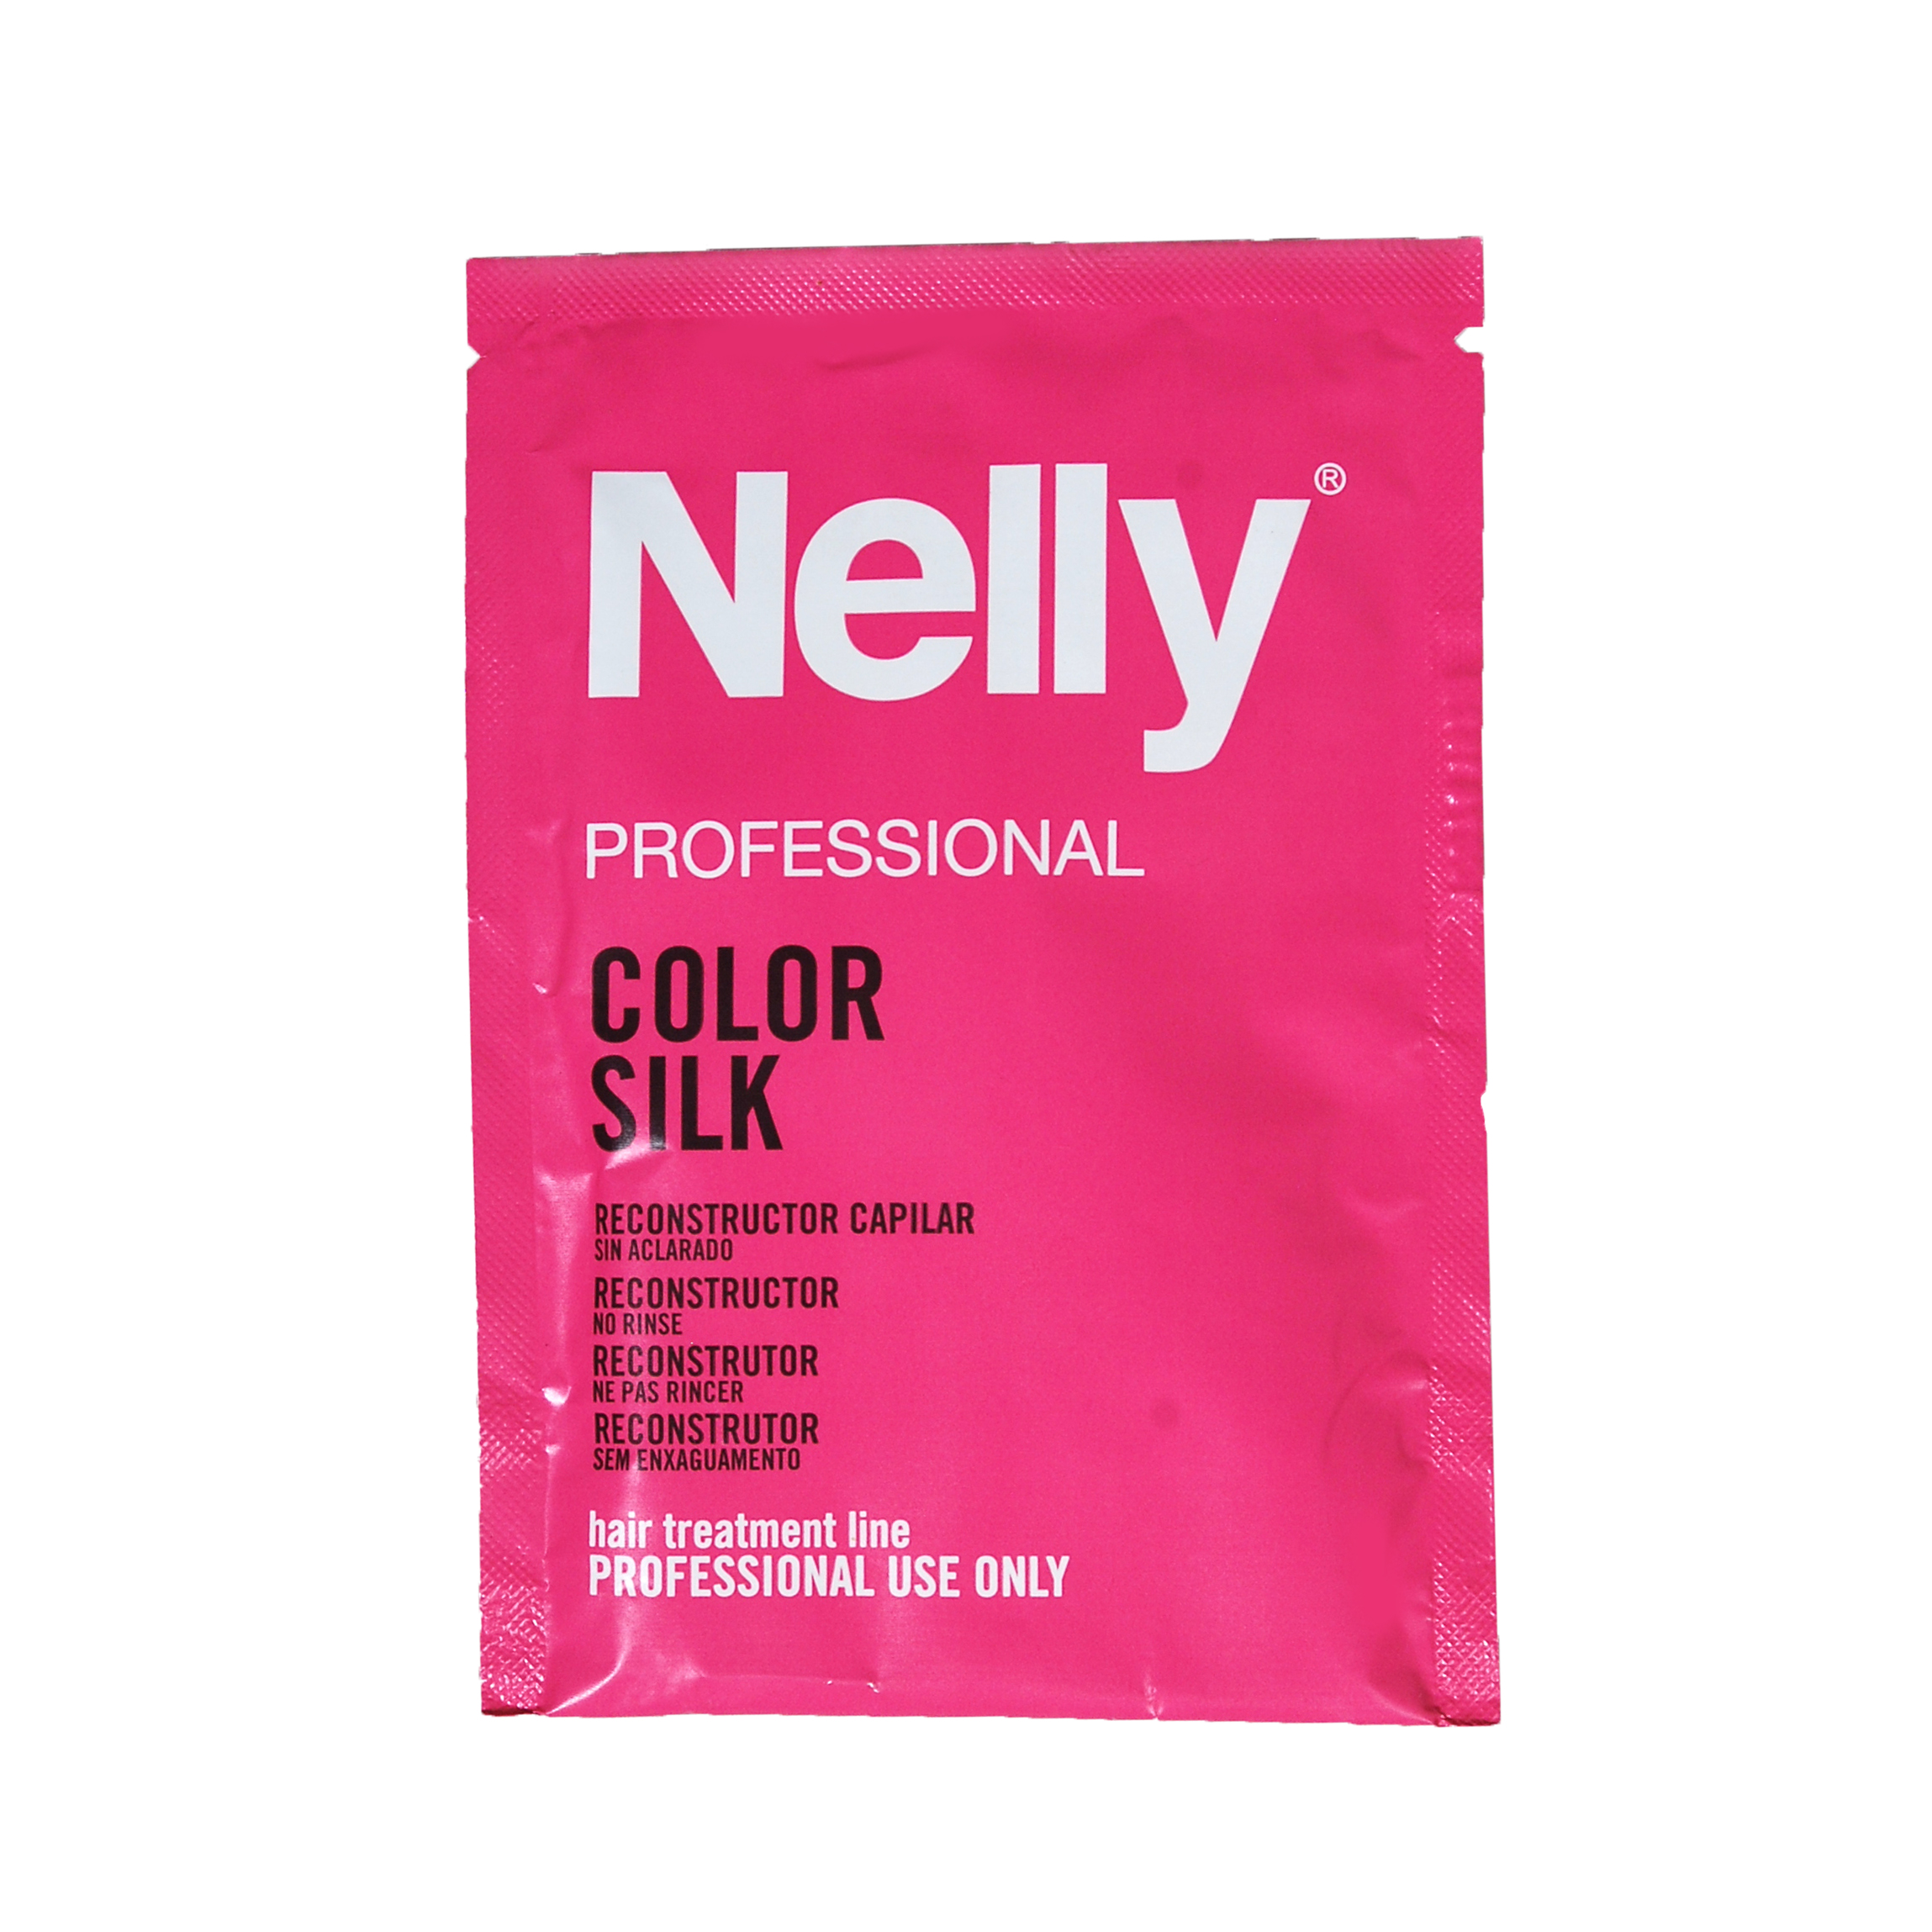 کرم مو تثبیت رنگ نلی مدلcolor silk مسافرتی حجم 30 میلی لیتر